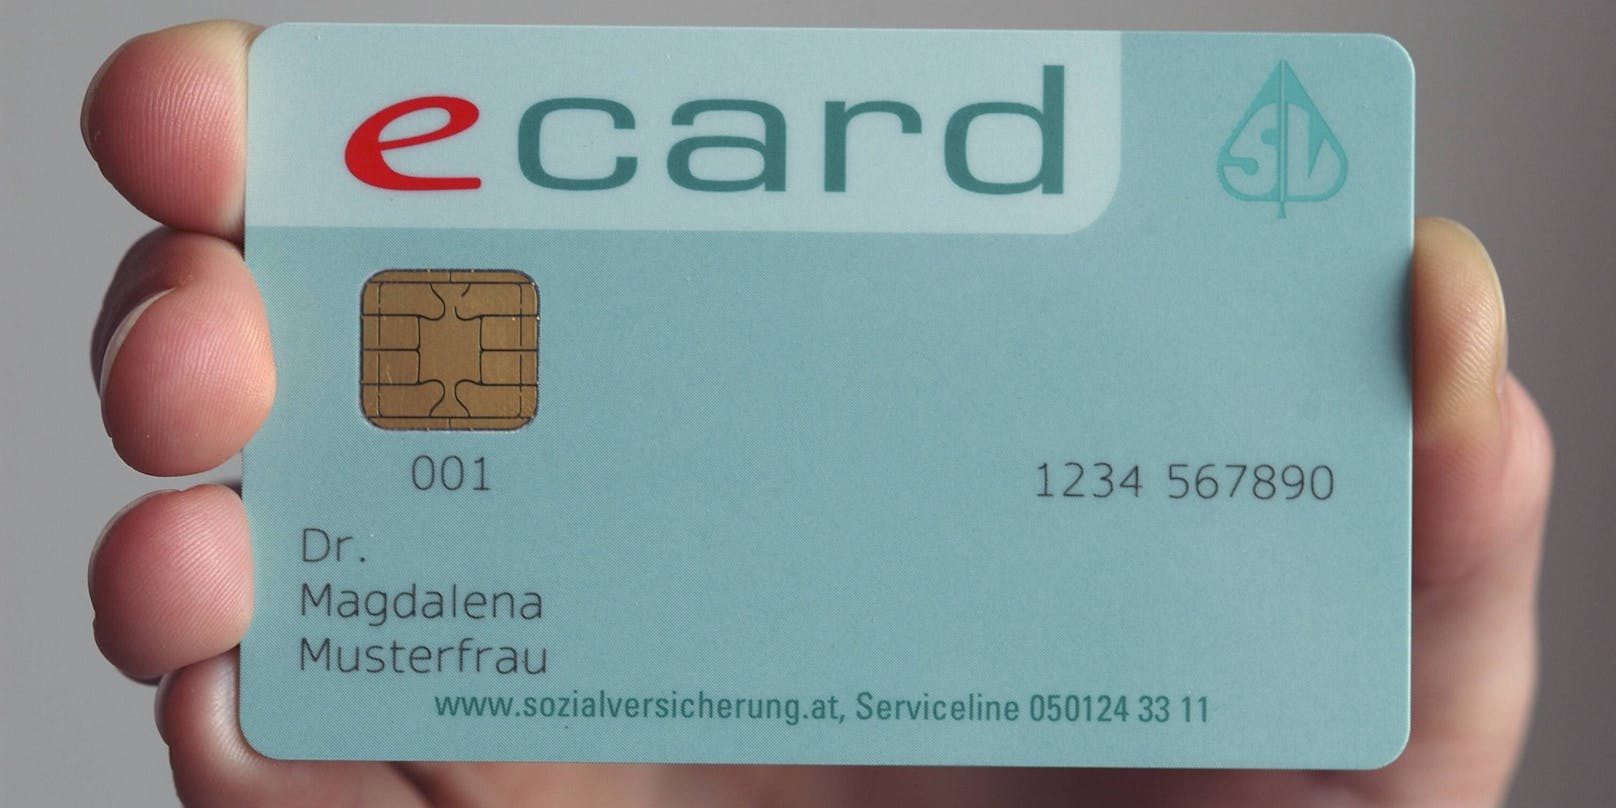 Die e-card wird doch nicht für den Nachweis im Rahmen des "Grünen Passes" verwendet werden können.